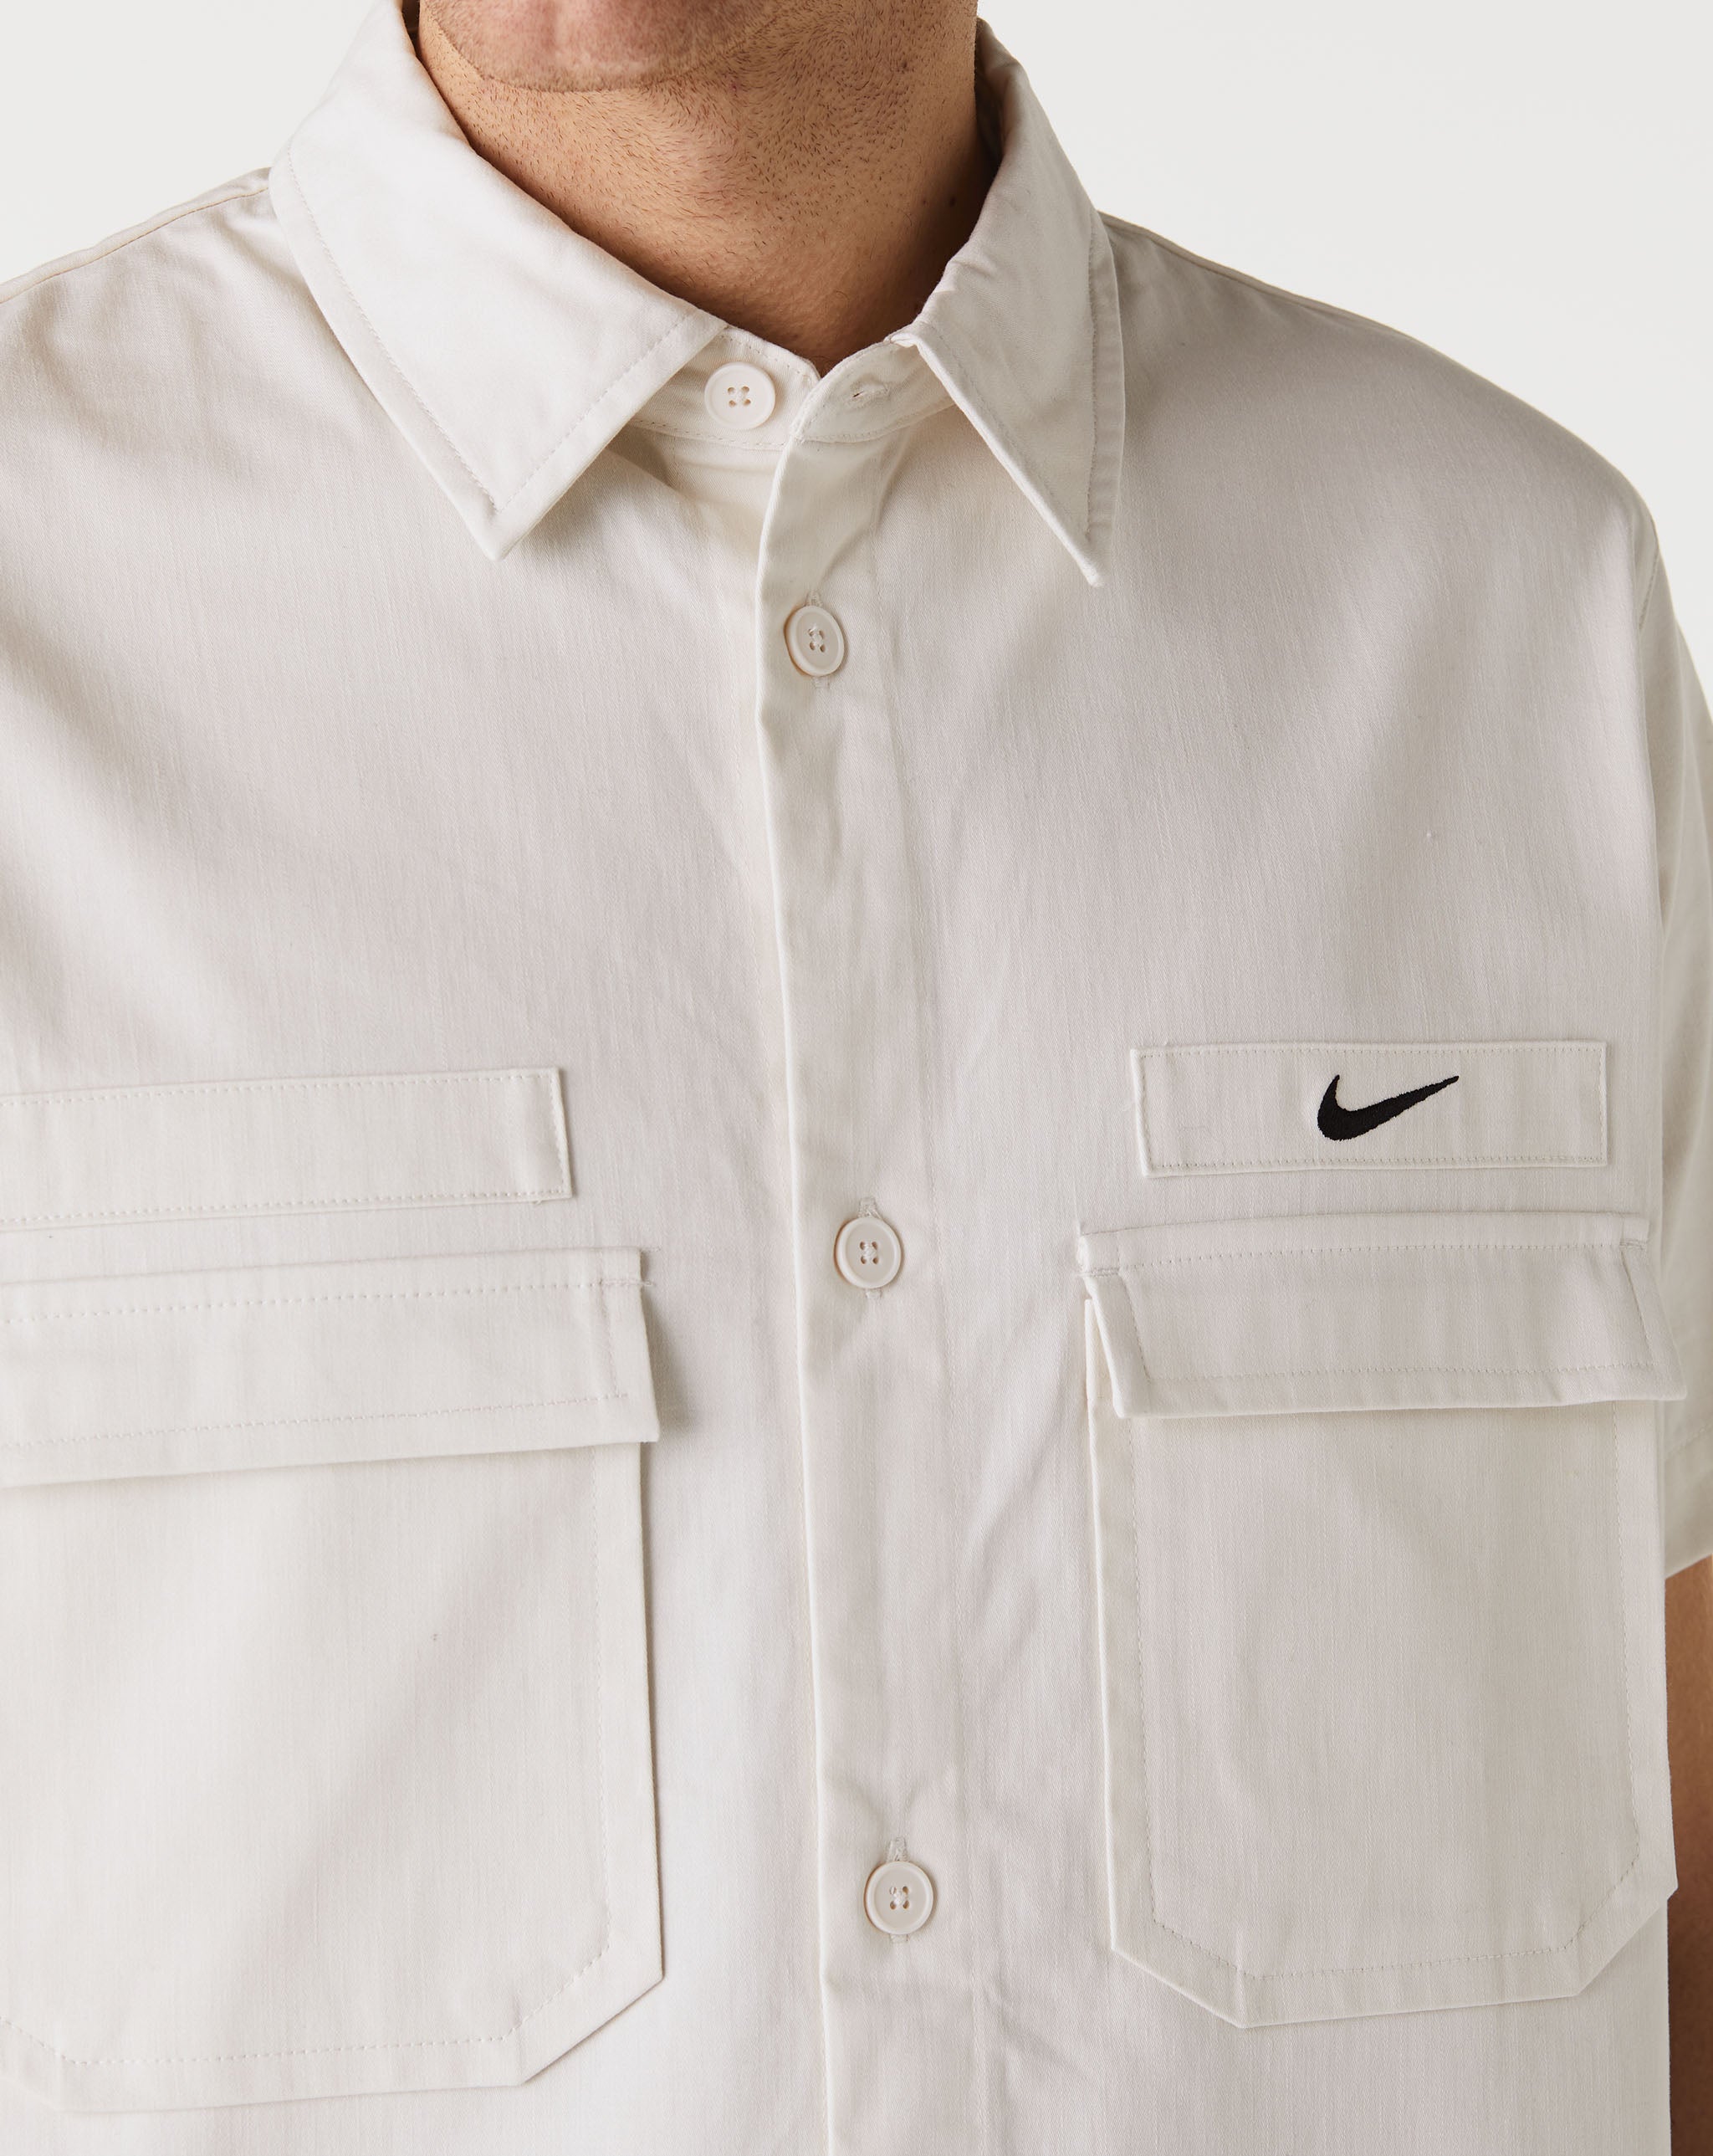 Nike HUF Peak 3.0 Grå t-shirt  - Cheap Urlfreeze Jordan outlet